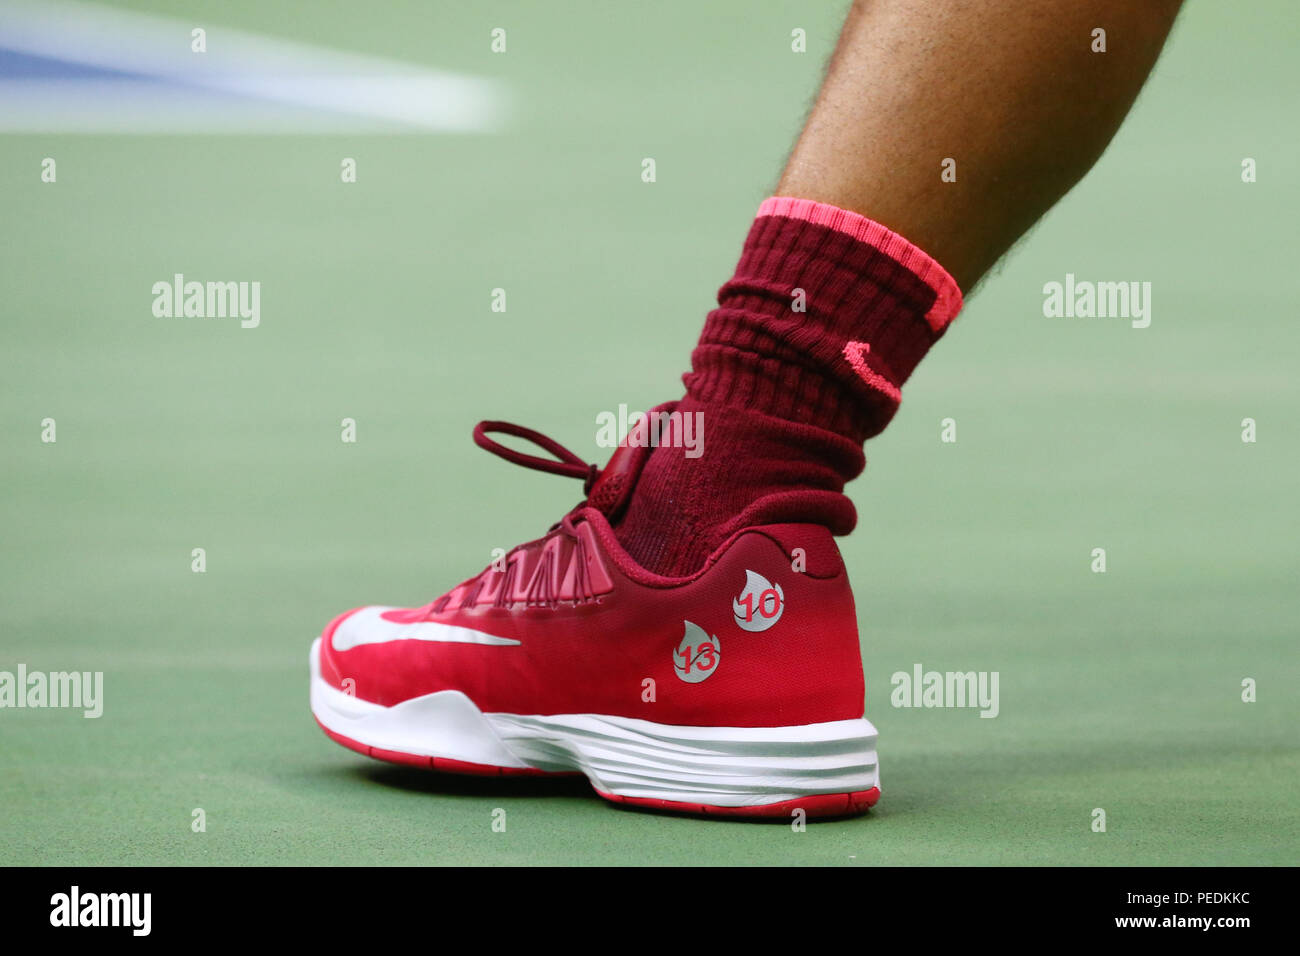 Grand Slam Rafael Nadal campeón de España lleva zapatillas de Nike personalizadas durante el US Open 2017 partido final Fotografía de stock -